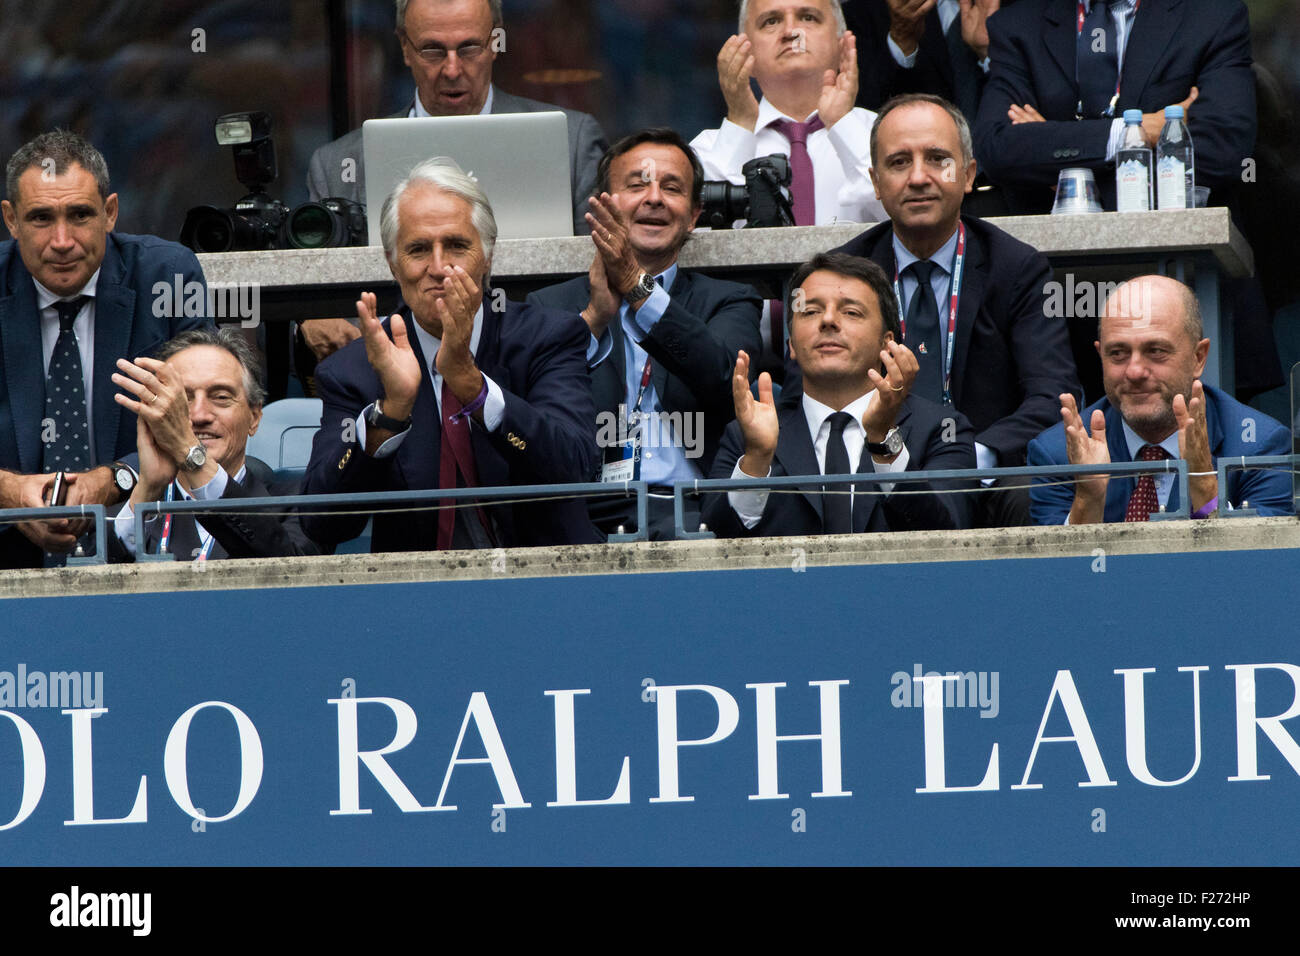 Primer Ministro italiano Matteo Renzi (tercero desde la izquierda) relojes Flavvia Pennetta (ITA) y Roberta VINCI (ITA) en la final femenina en el año 2015 el US Open de tenis Foto de stock